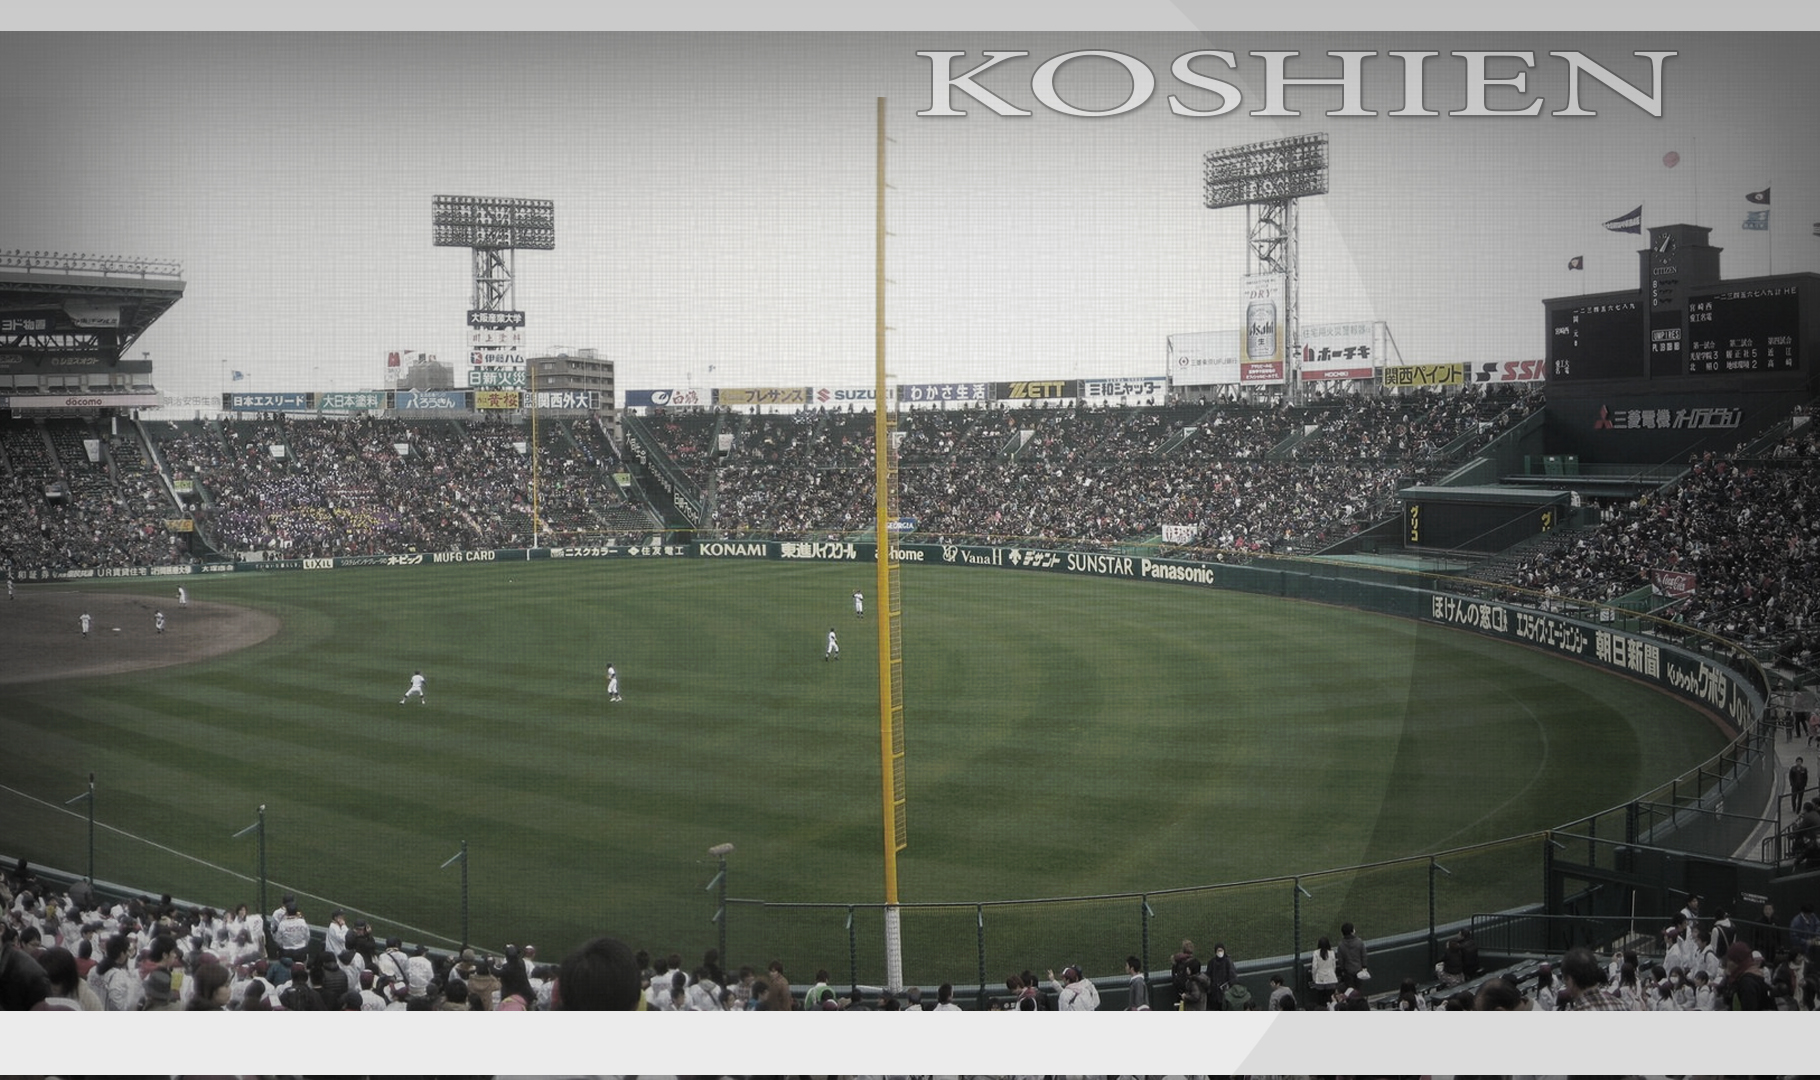 阪神の壁紙  壁紙 koshien hanshin tigers stadium 野球の壁紙 阪神